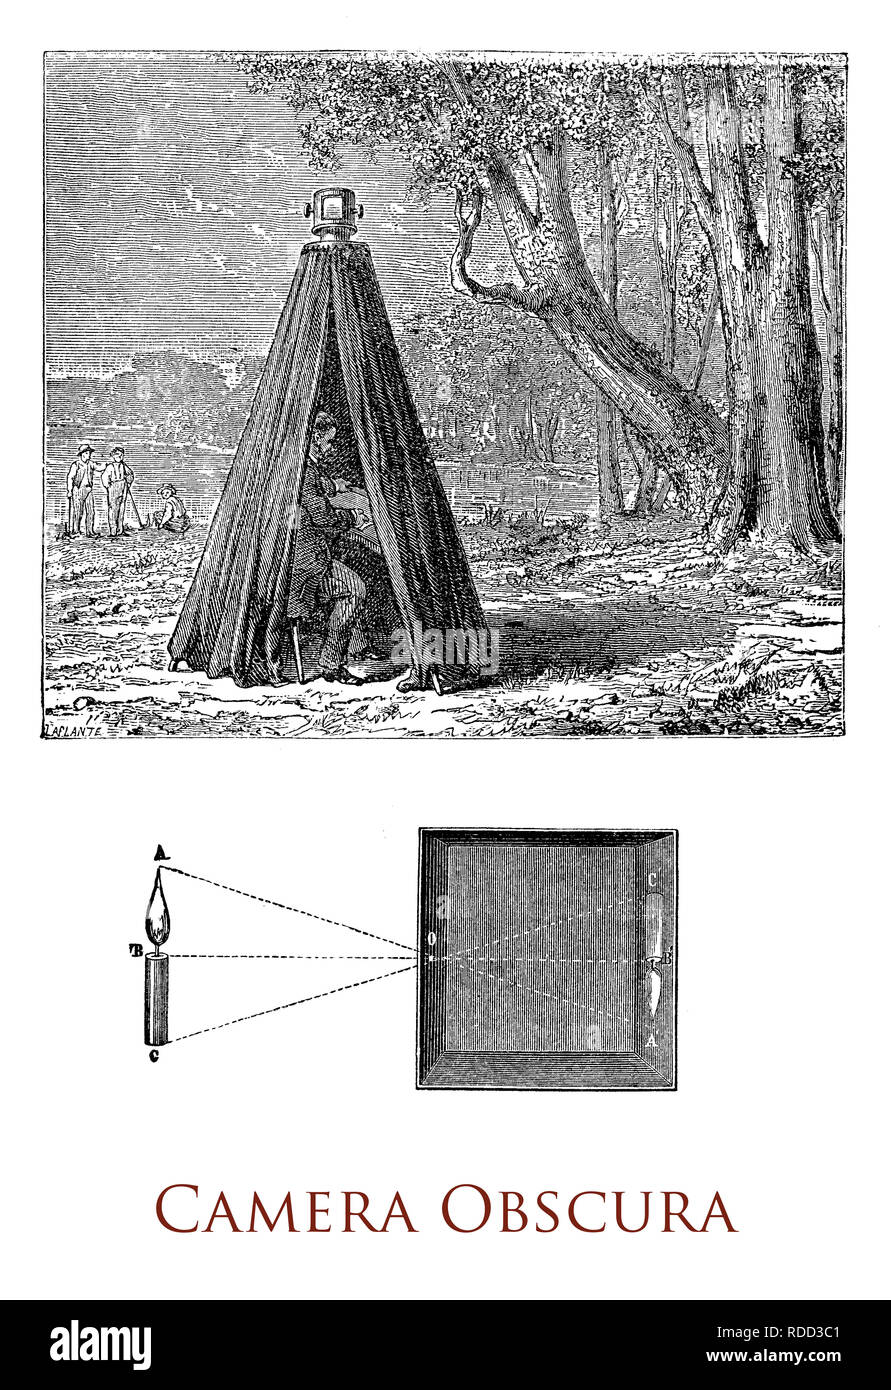 Camera obscura oder dunklen Zimmer oder Lochblende Bild bezieht sich auf die natürliche optische Phänomen, wenn ein Bild von einer Szene auf die andere Seite des Bildschirms durch ein kleines Loch in dem Bildschirm als umgekehrt und invertiertes Bild projiziert wird Stockfoto